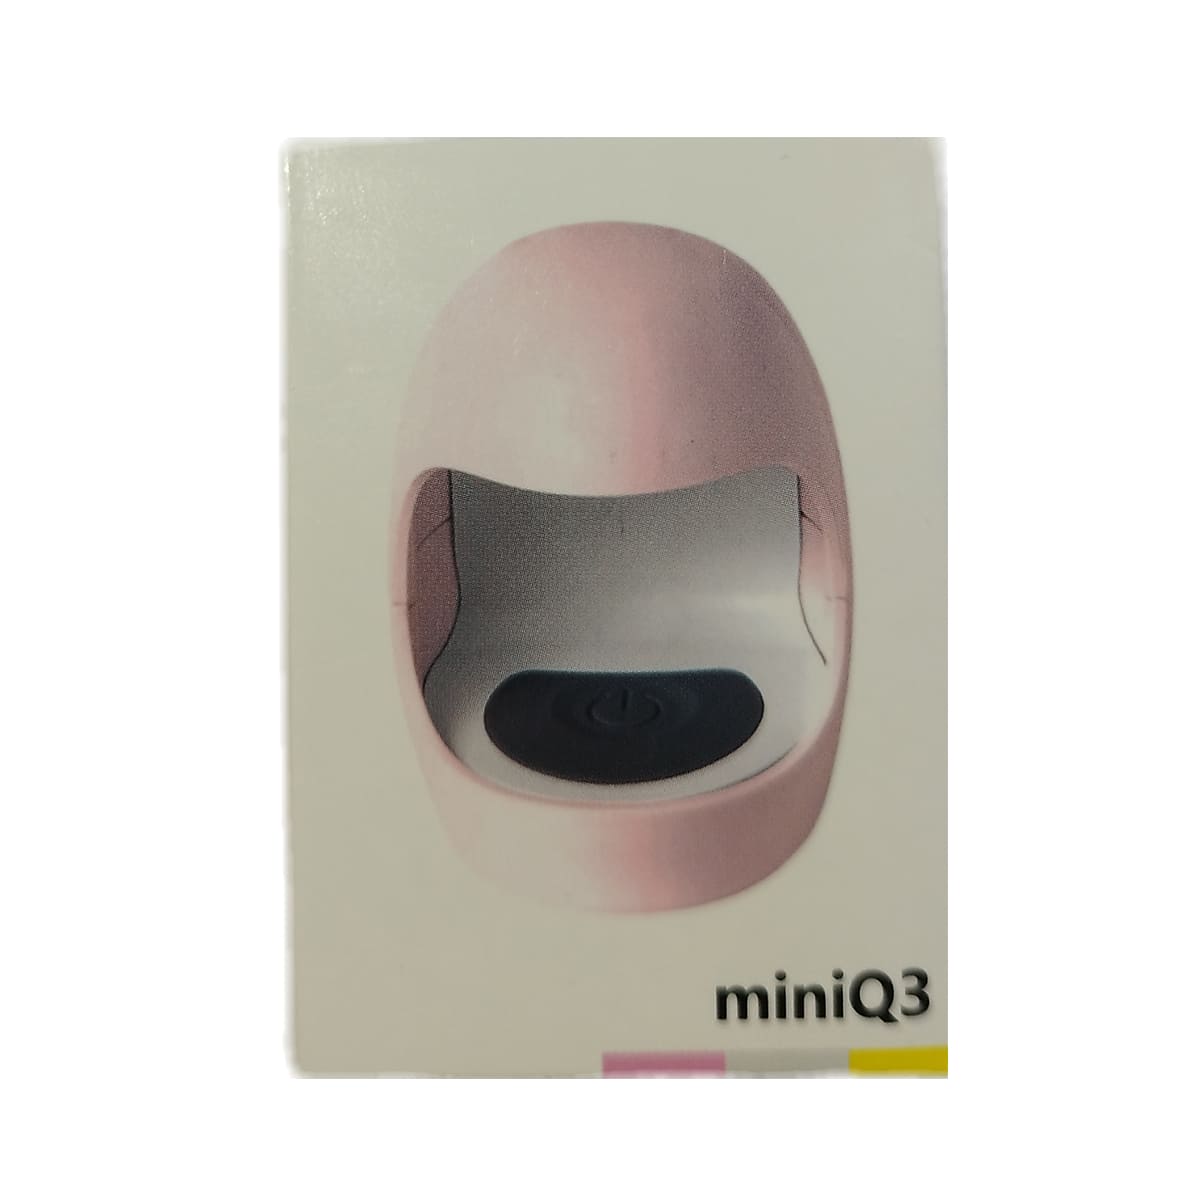 لاک خشک کن مدل miniQ3